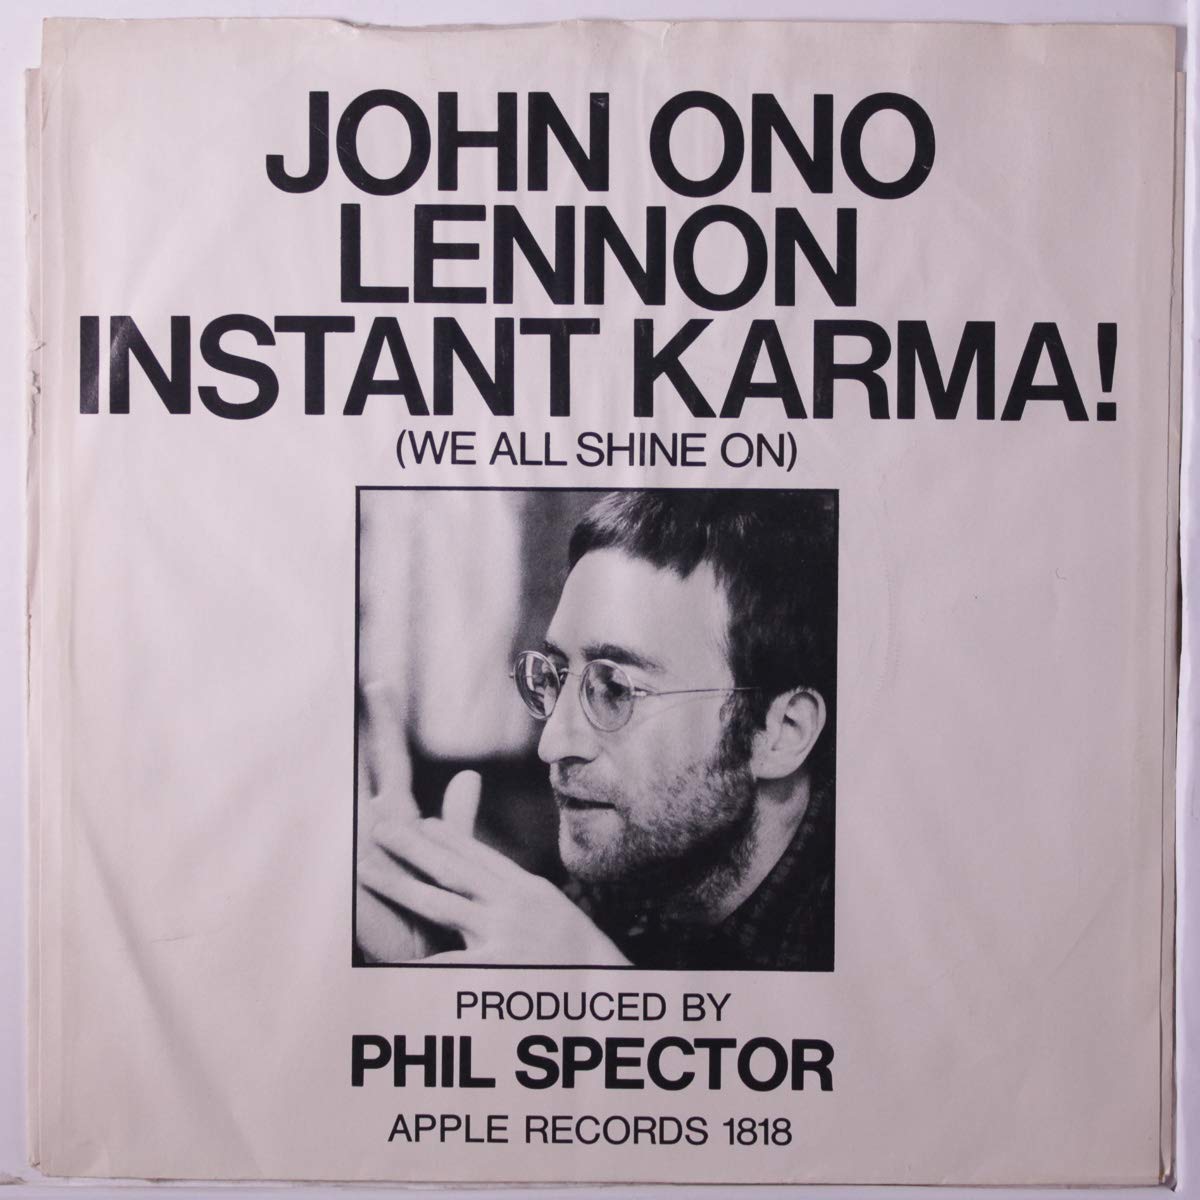 john lennon album cover for "instant karma"